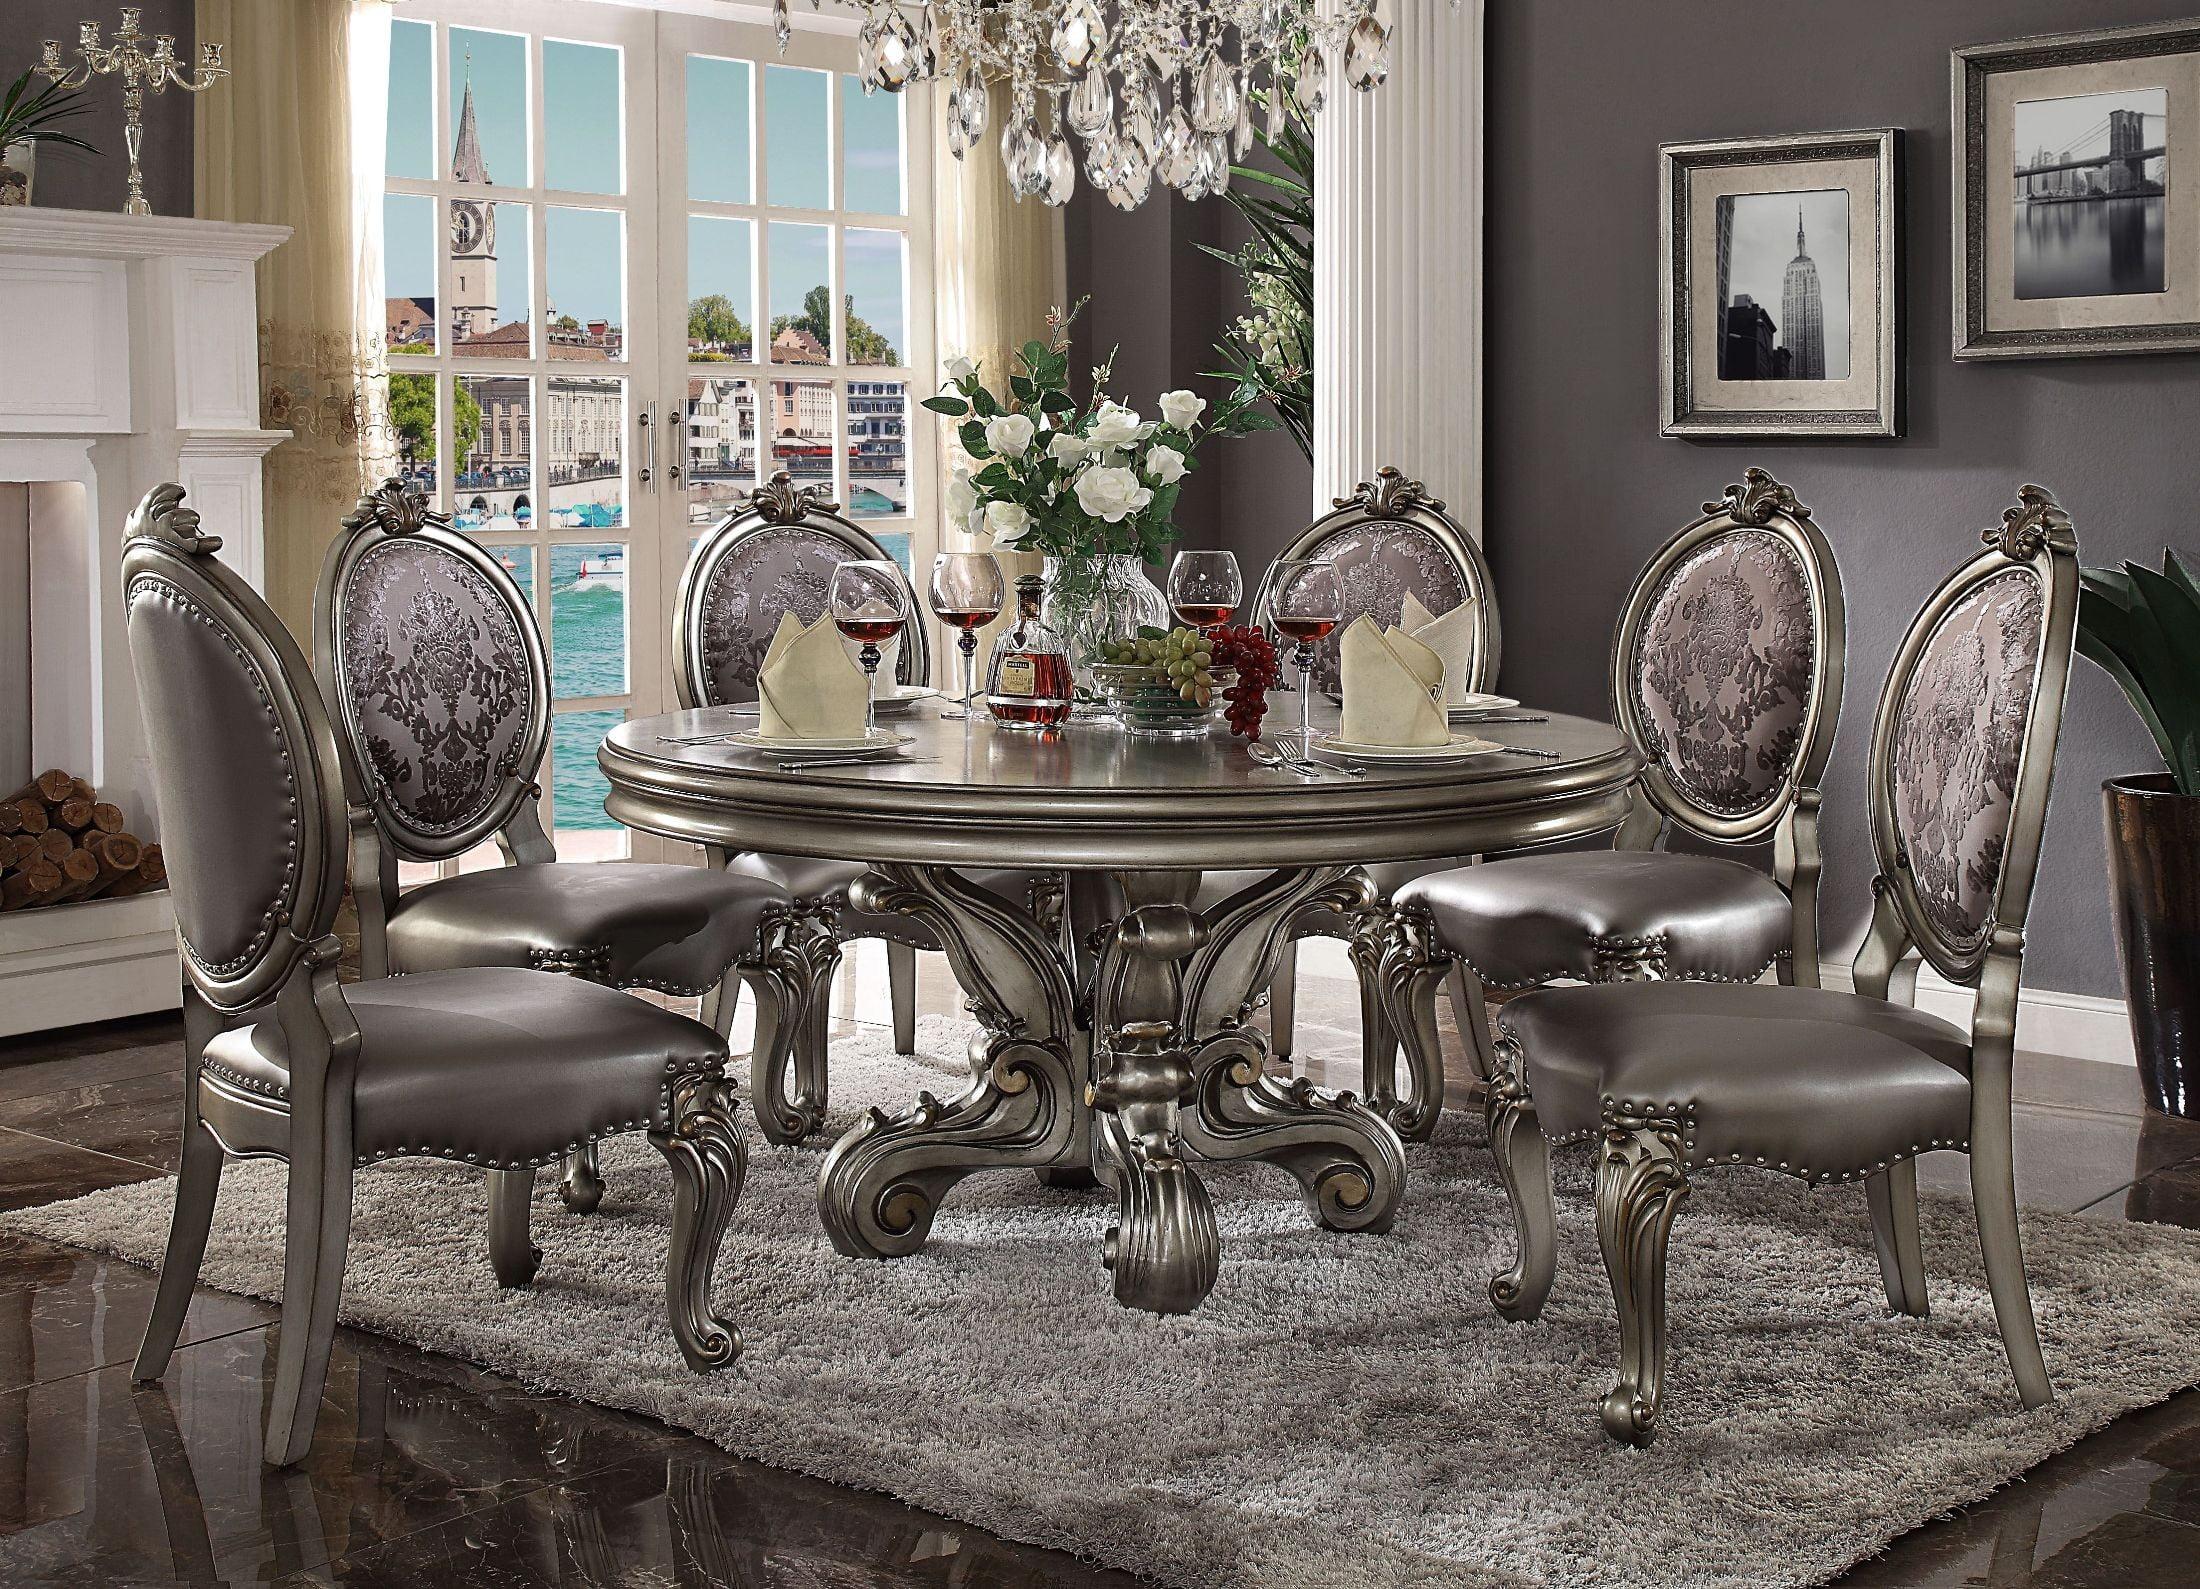 

    
Astoria Grand SKU: W001503347 Dining Table Platinum/Antique/Silver SKU: W001503347
